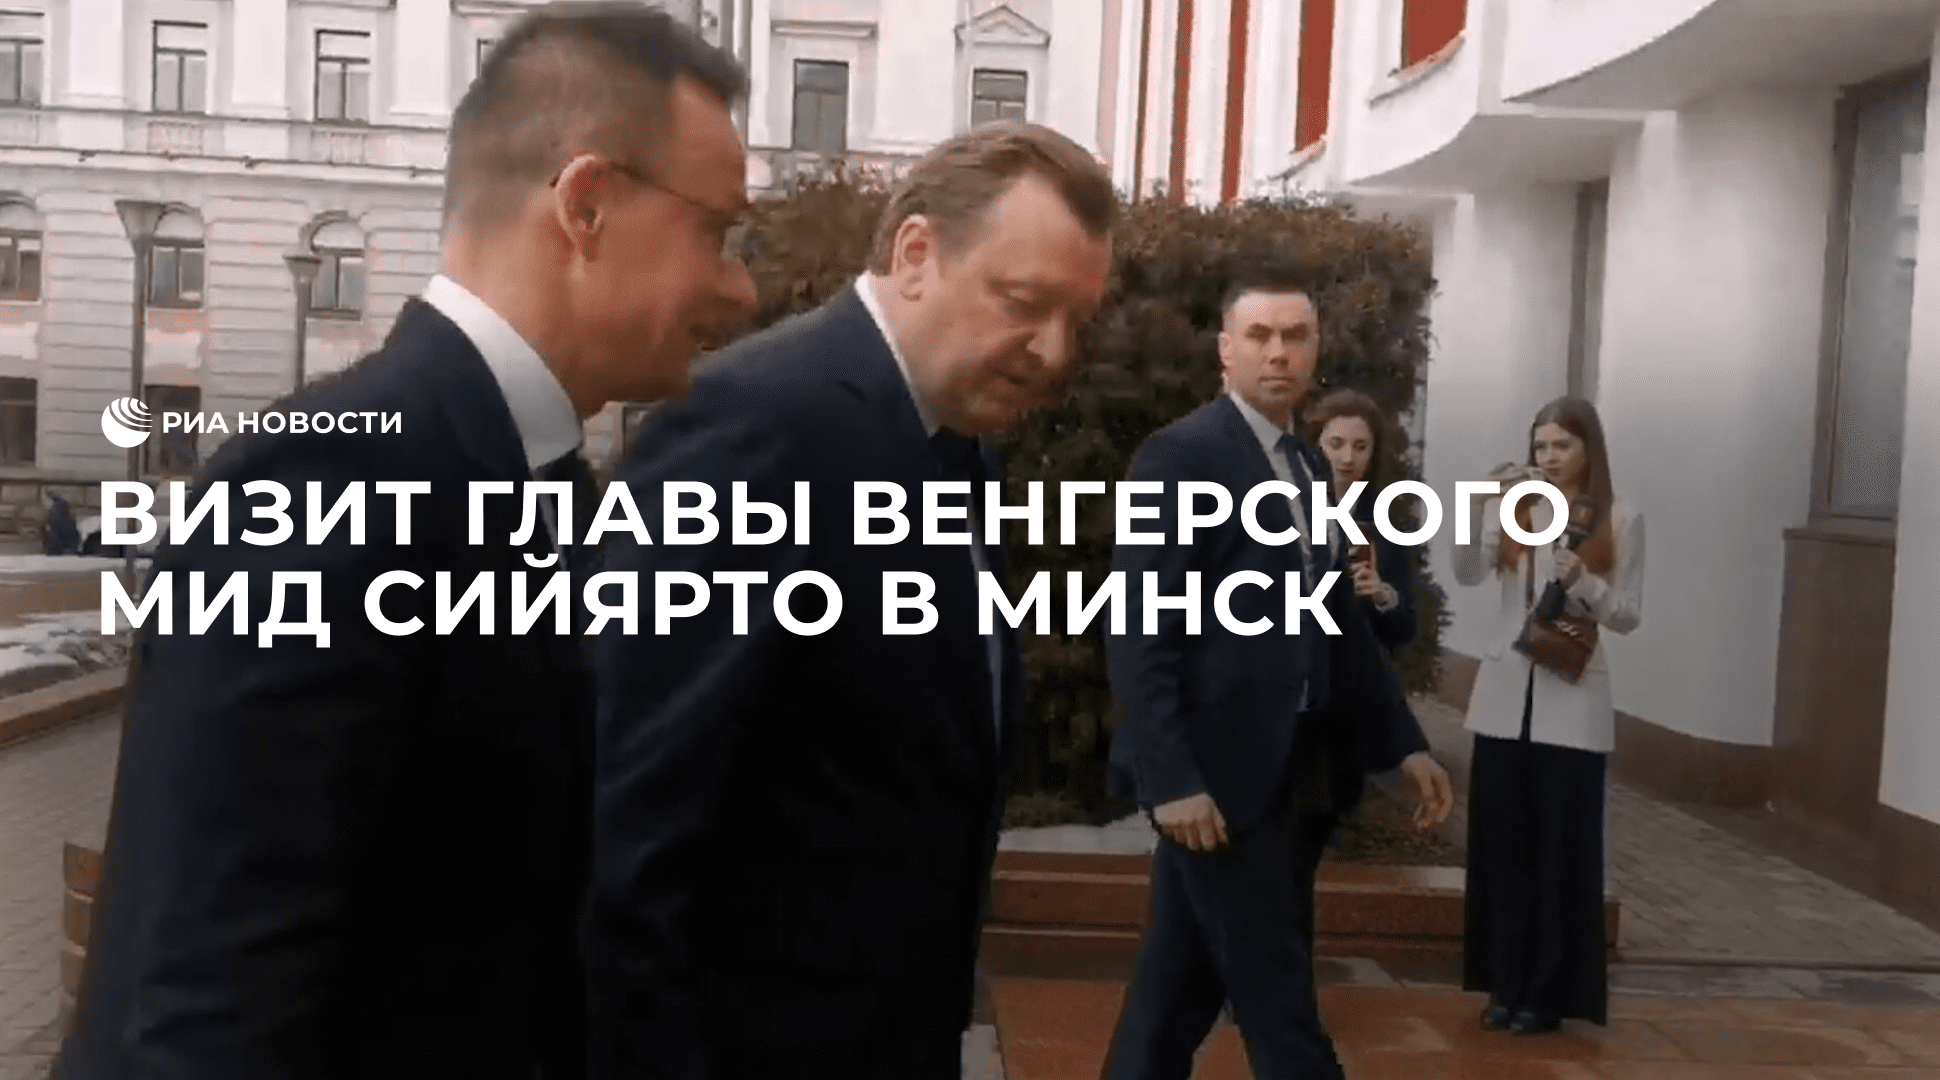 Визит главы венгерского МИД Сийярто в Минск